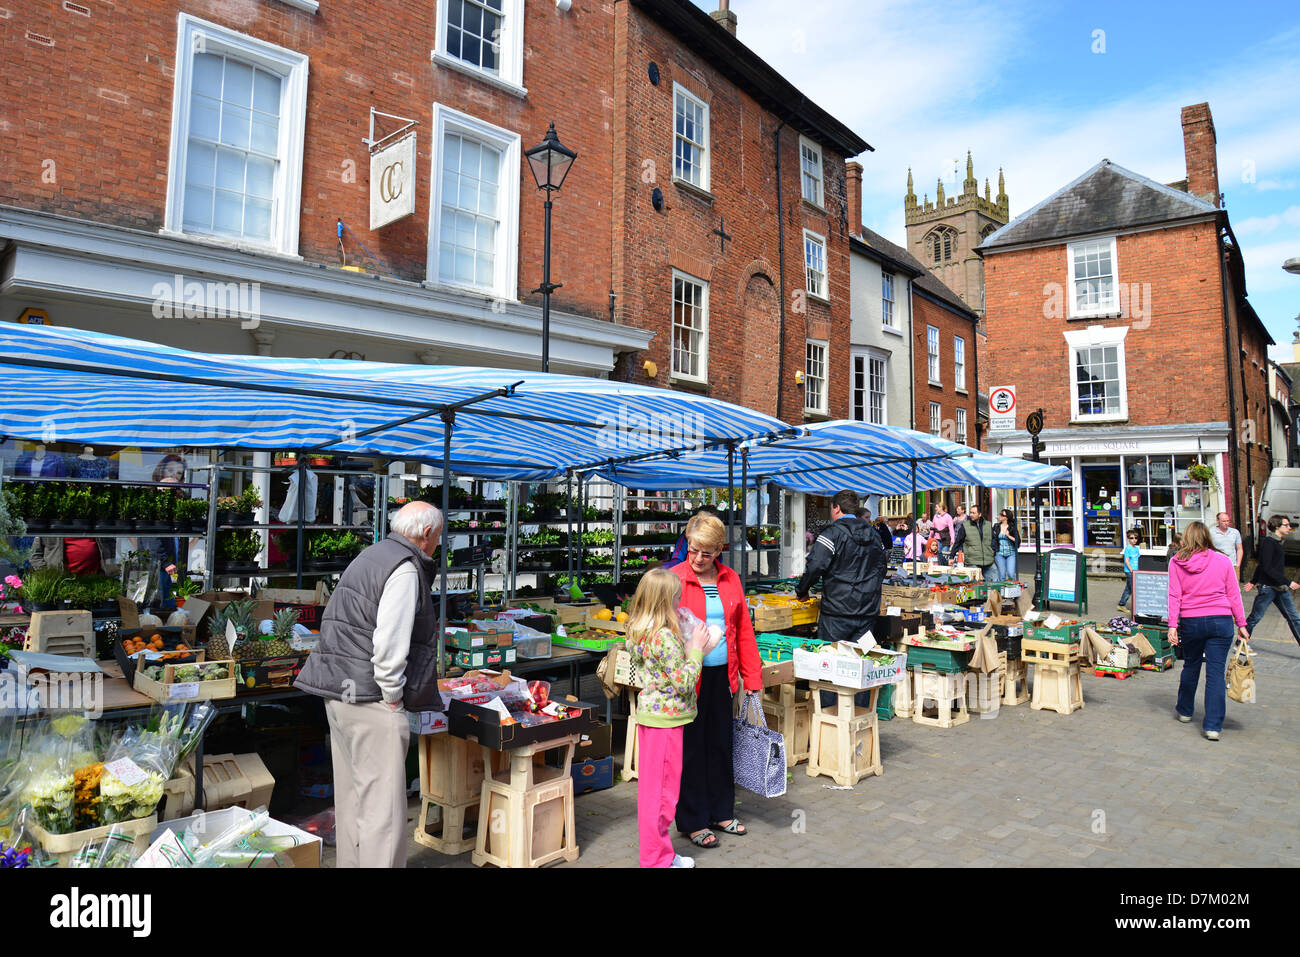 Stände mit Straßenmarkt, Schlossplatz, Ludlow, Shropshire, England, Vereinigtes Königreich Stockfoto